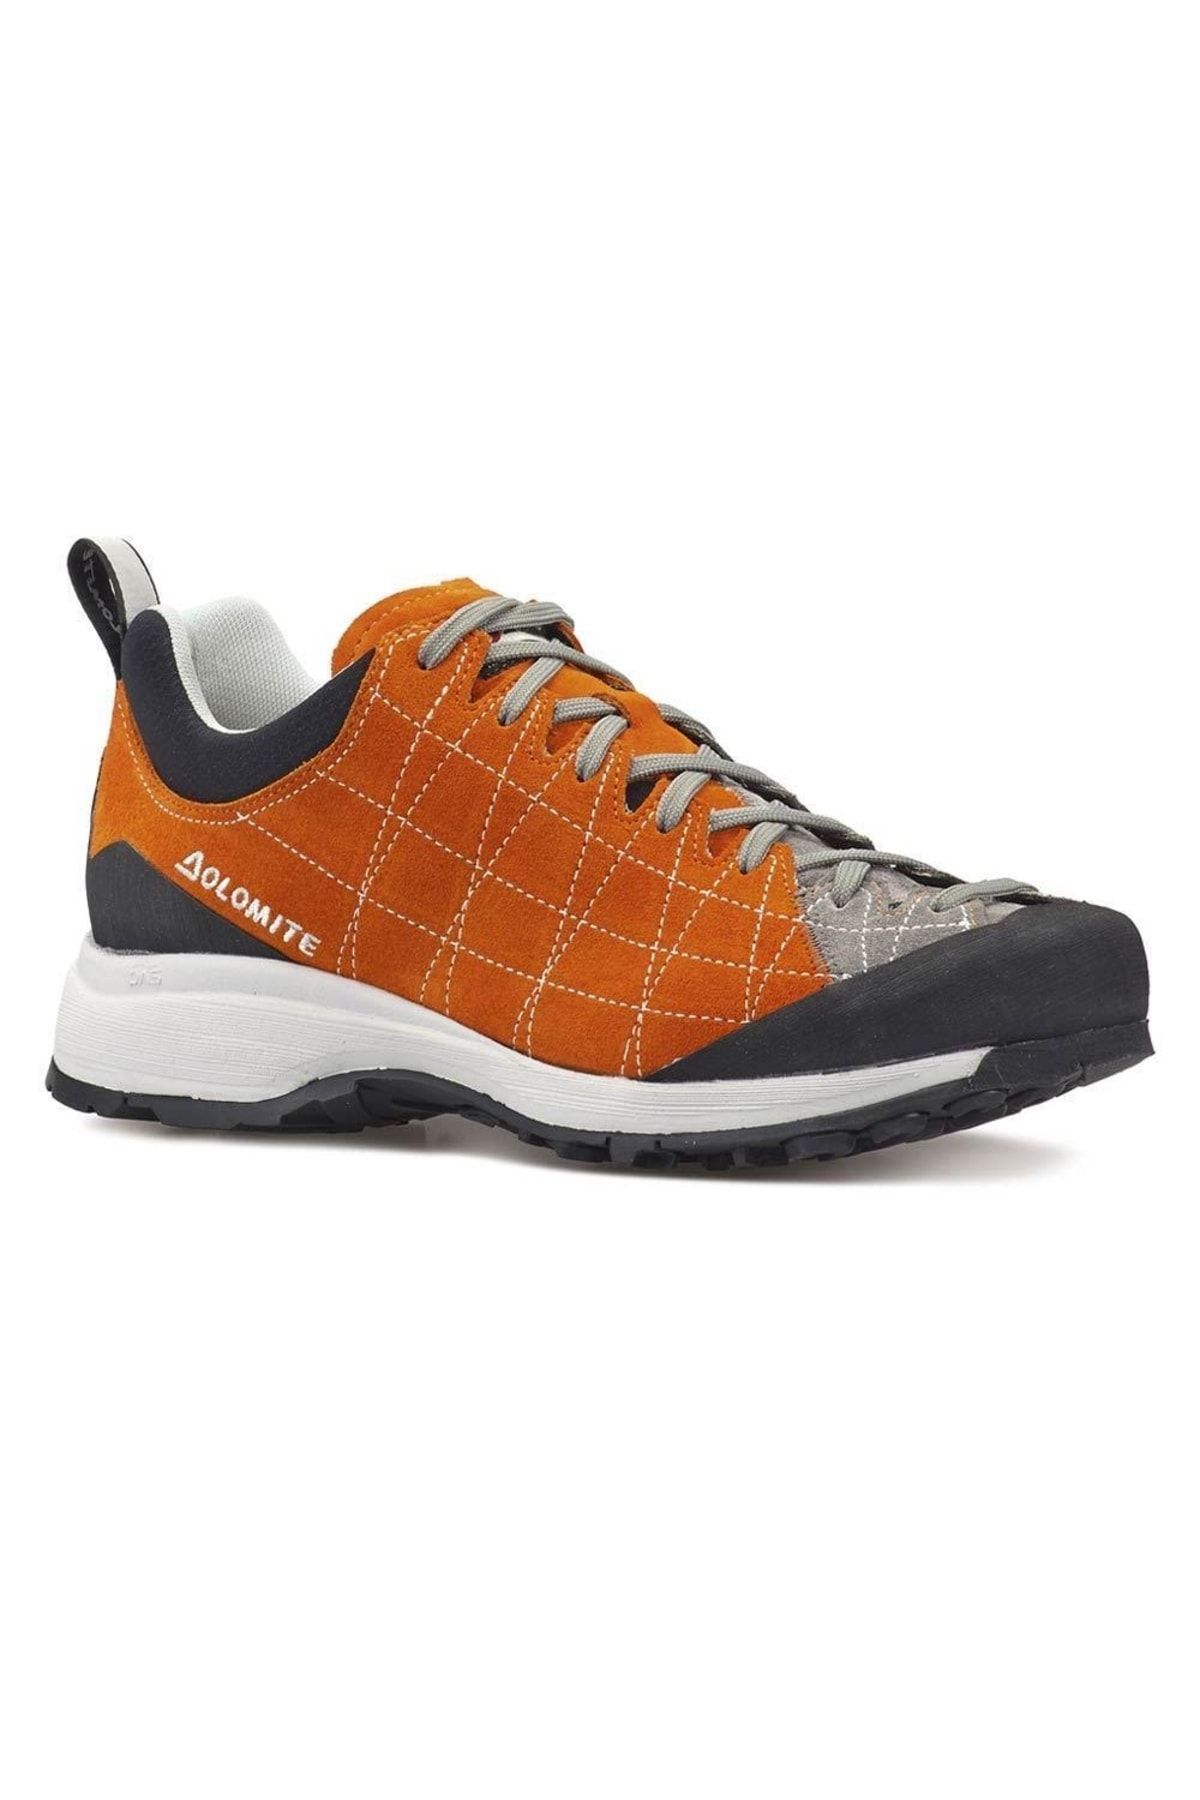 Dolomite Diagonal Trekking Erkek Ayakkabı-turuncu